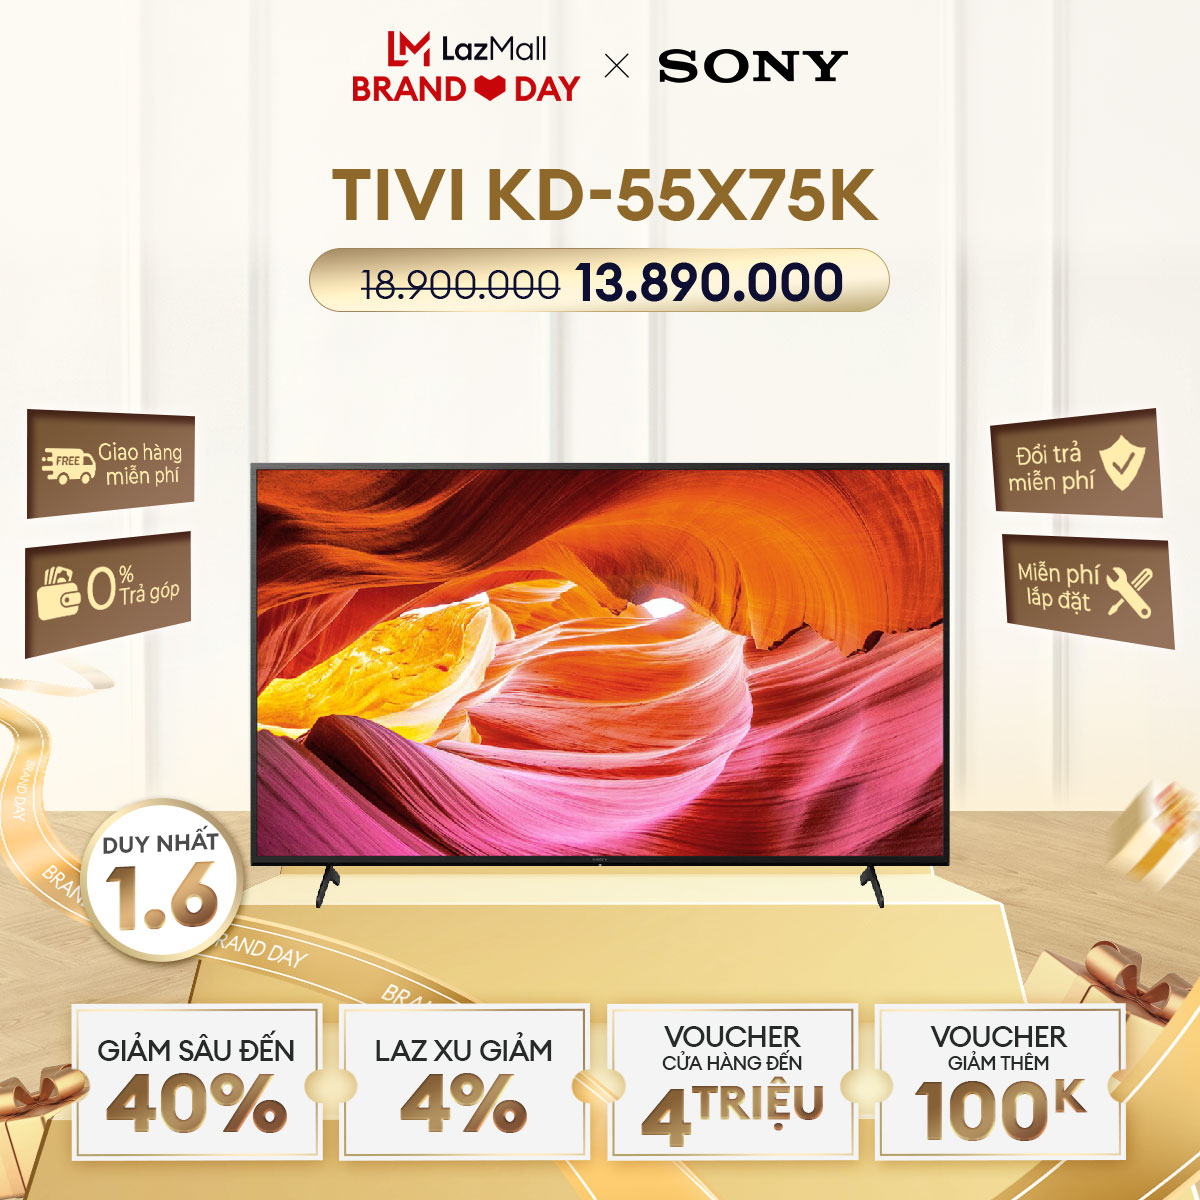 (DUY NHẤT BRAND DAY 1.6) Tivi Sony 55 inch | 55X75K | 4K Ultra HD | Dải tần nhạy sáng cao (HDR) | Smart TV (Google TV) I Mới 2022